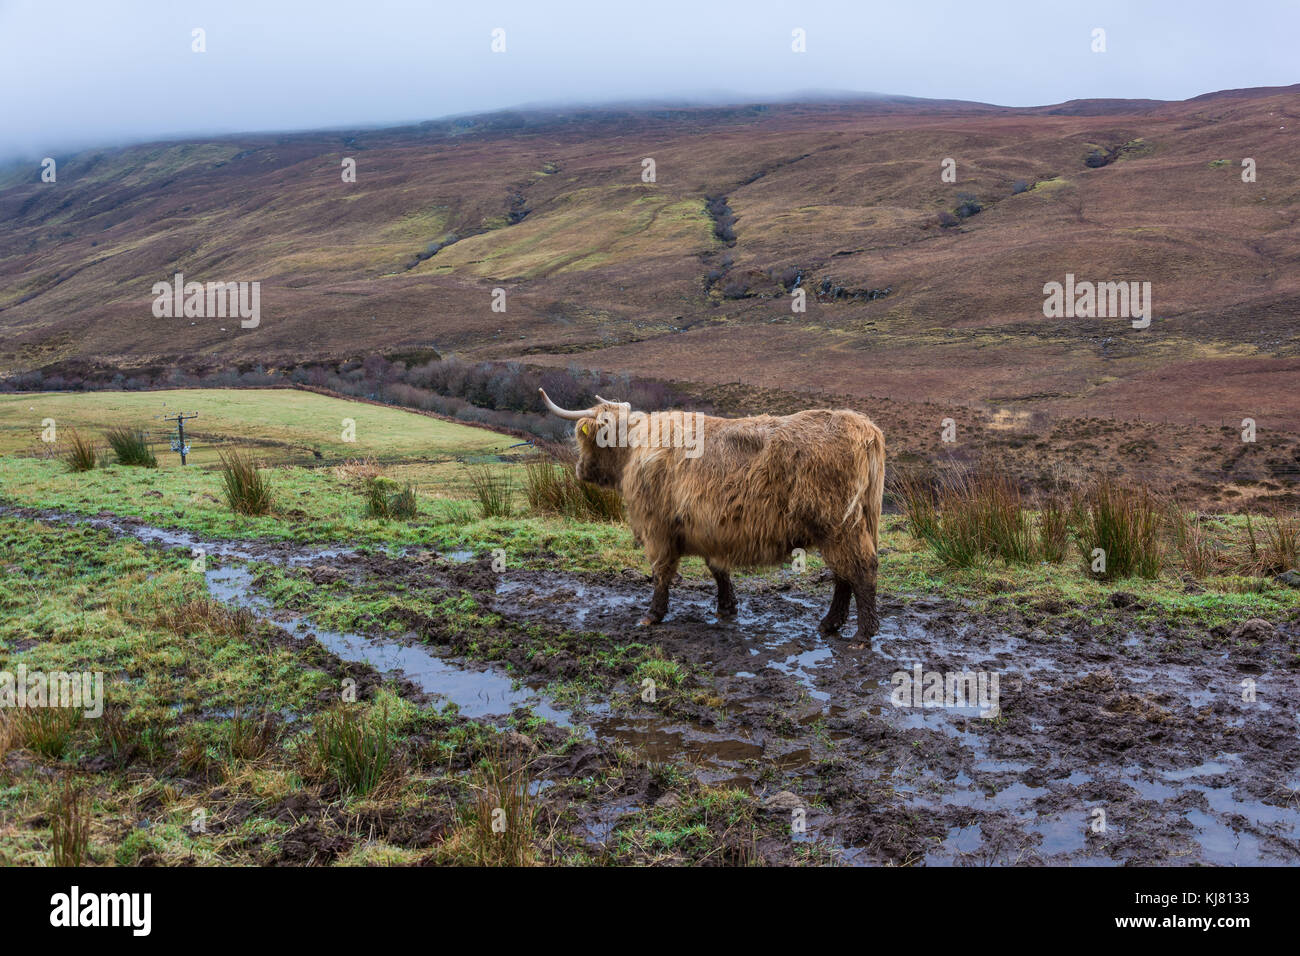 Vache, hihland drynoch, ile de Skye, Ecosse, Royaume-Uni Banque D'Images